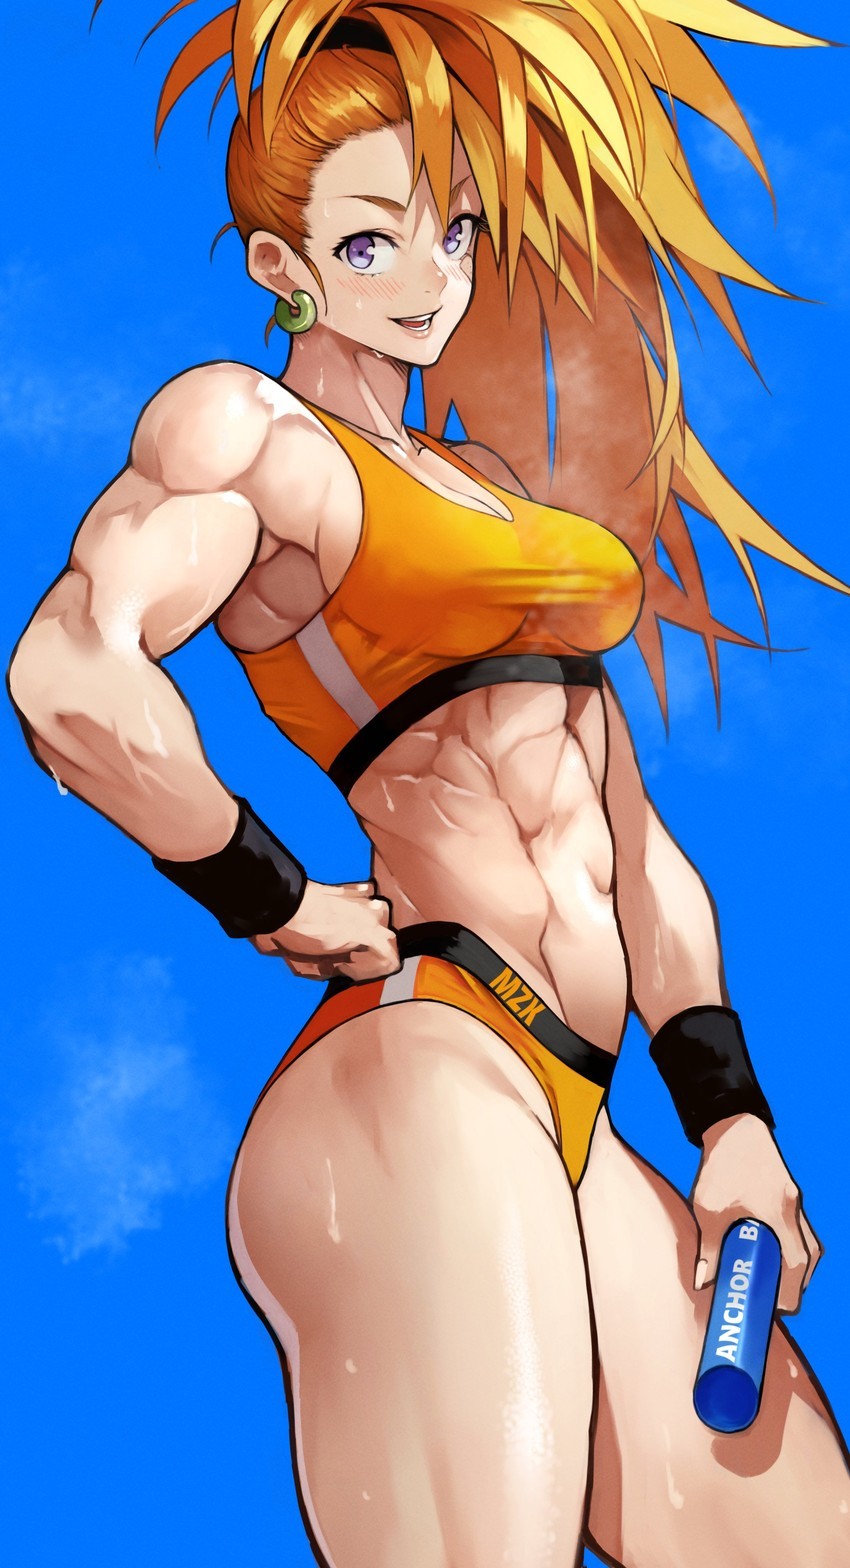 Muscle girl anime 20 Huge